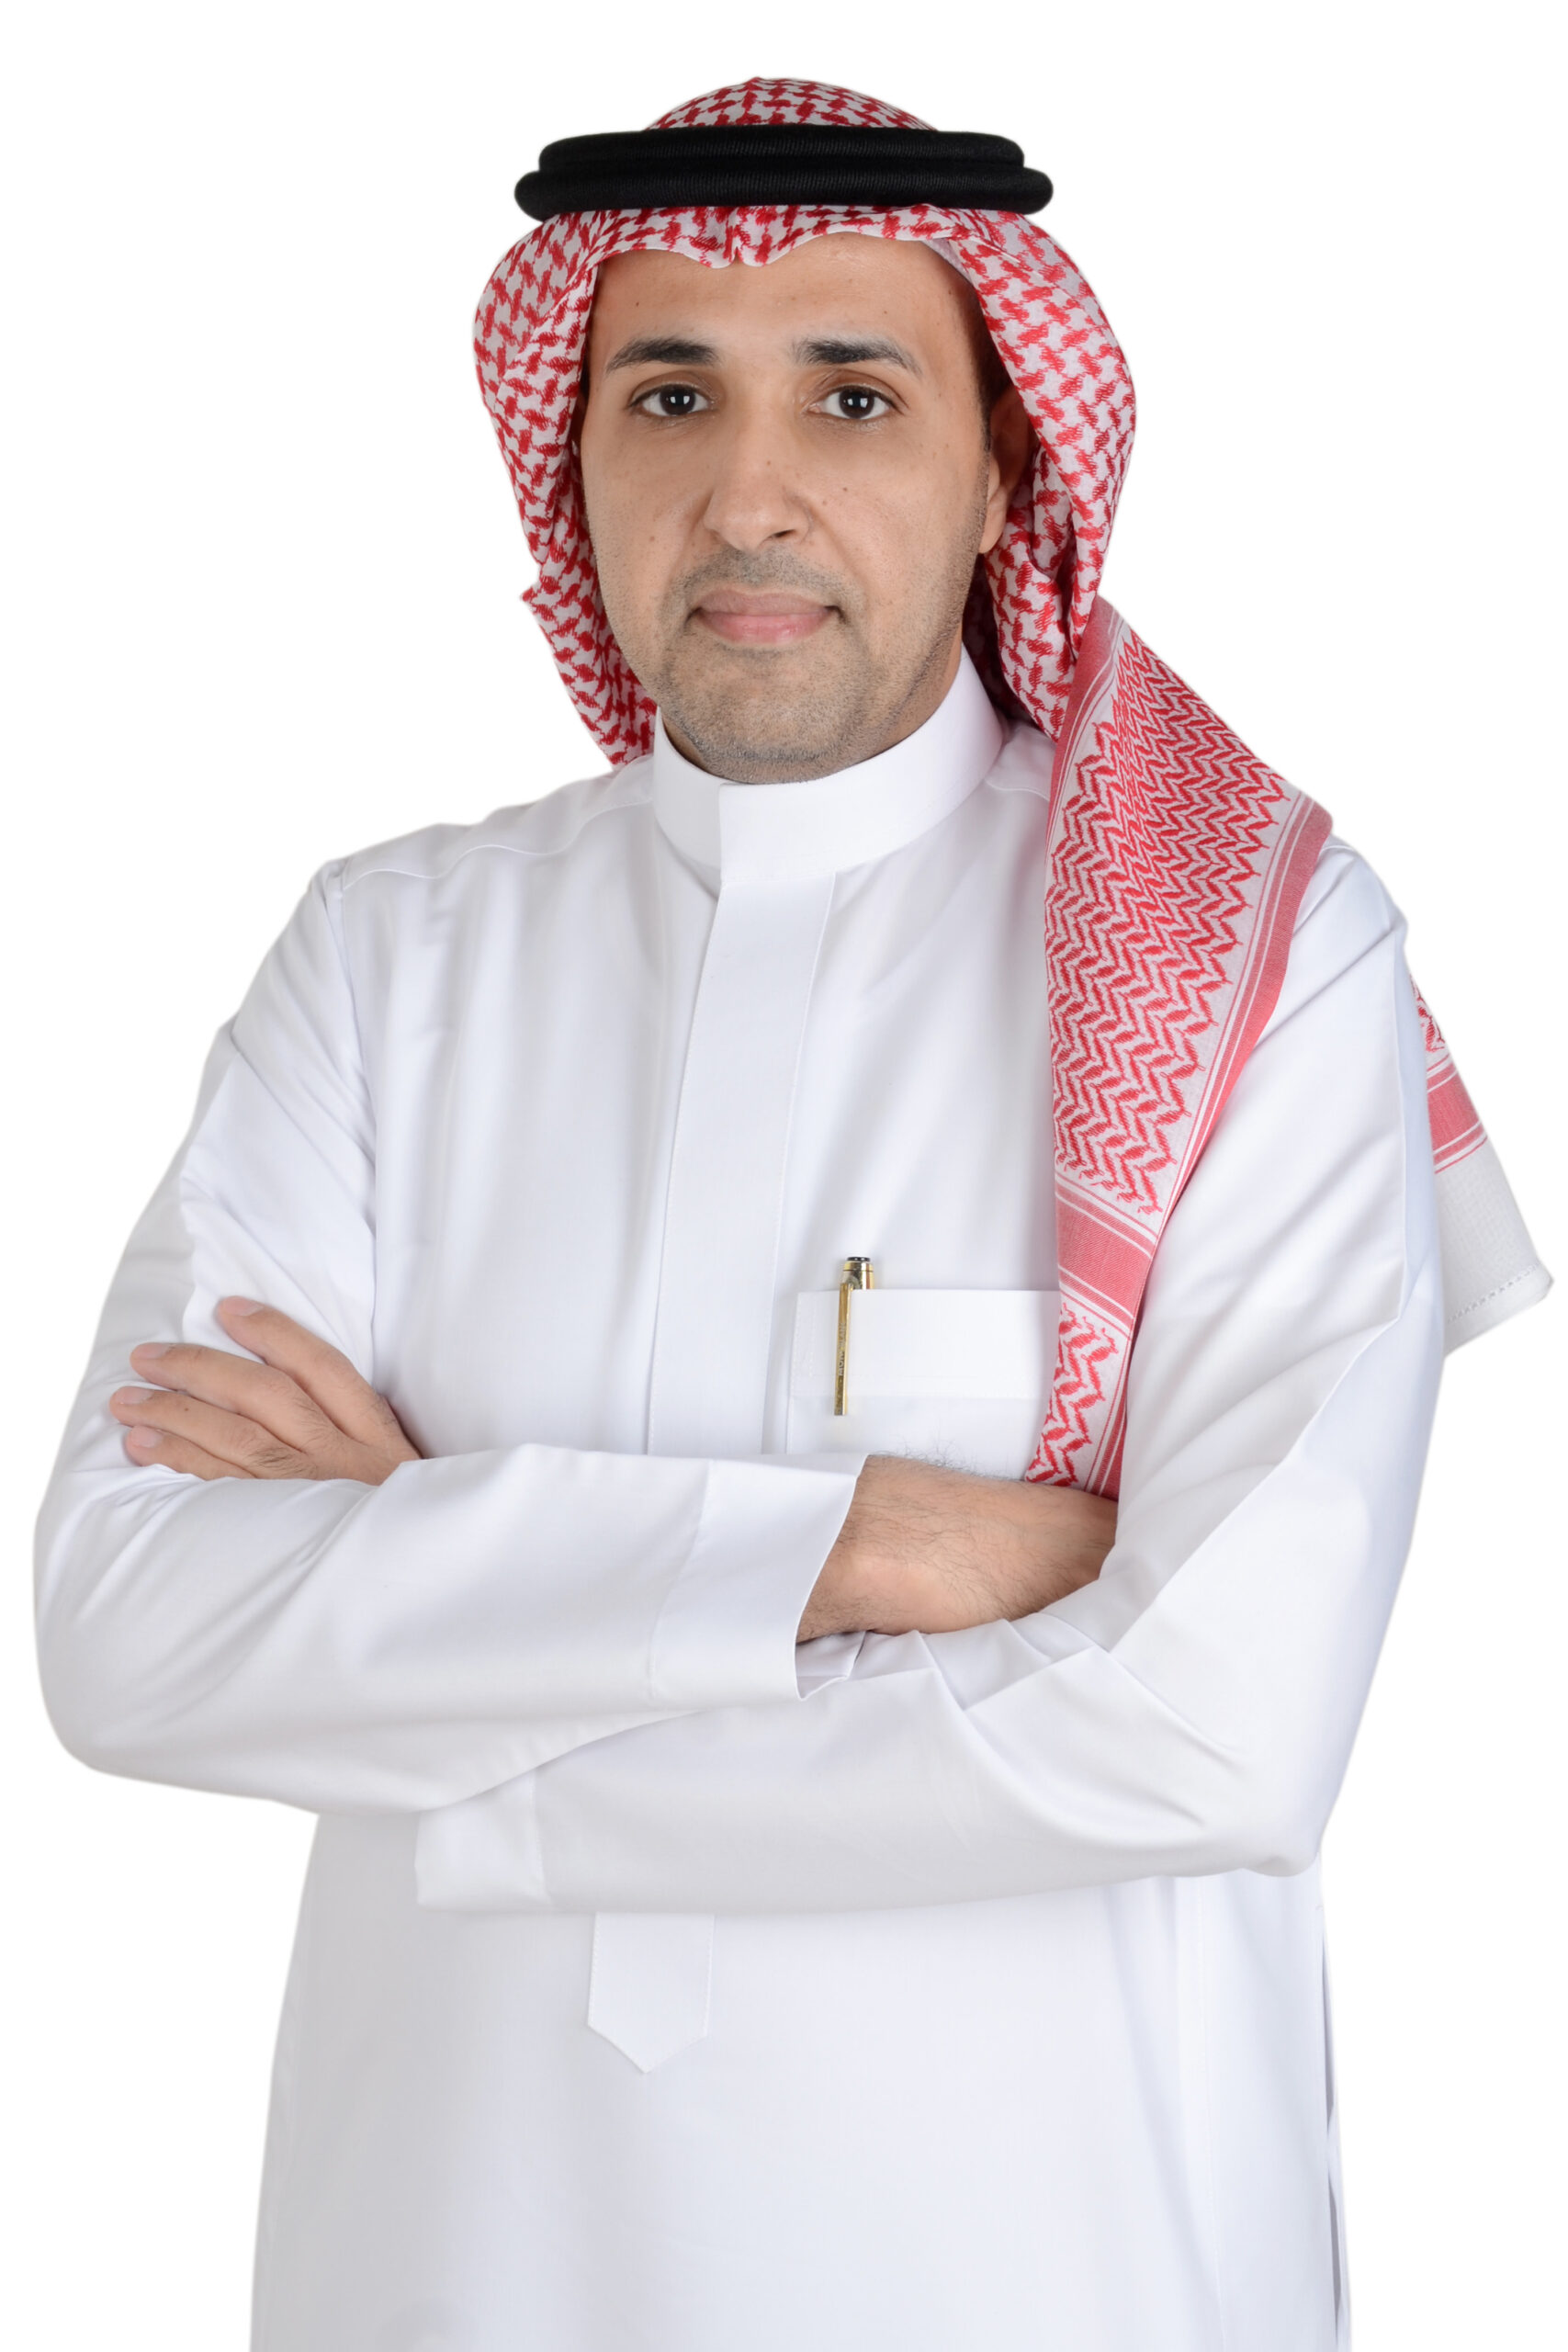 أ. سعد بن منيف ال ثقفان